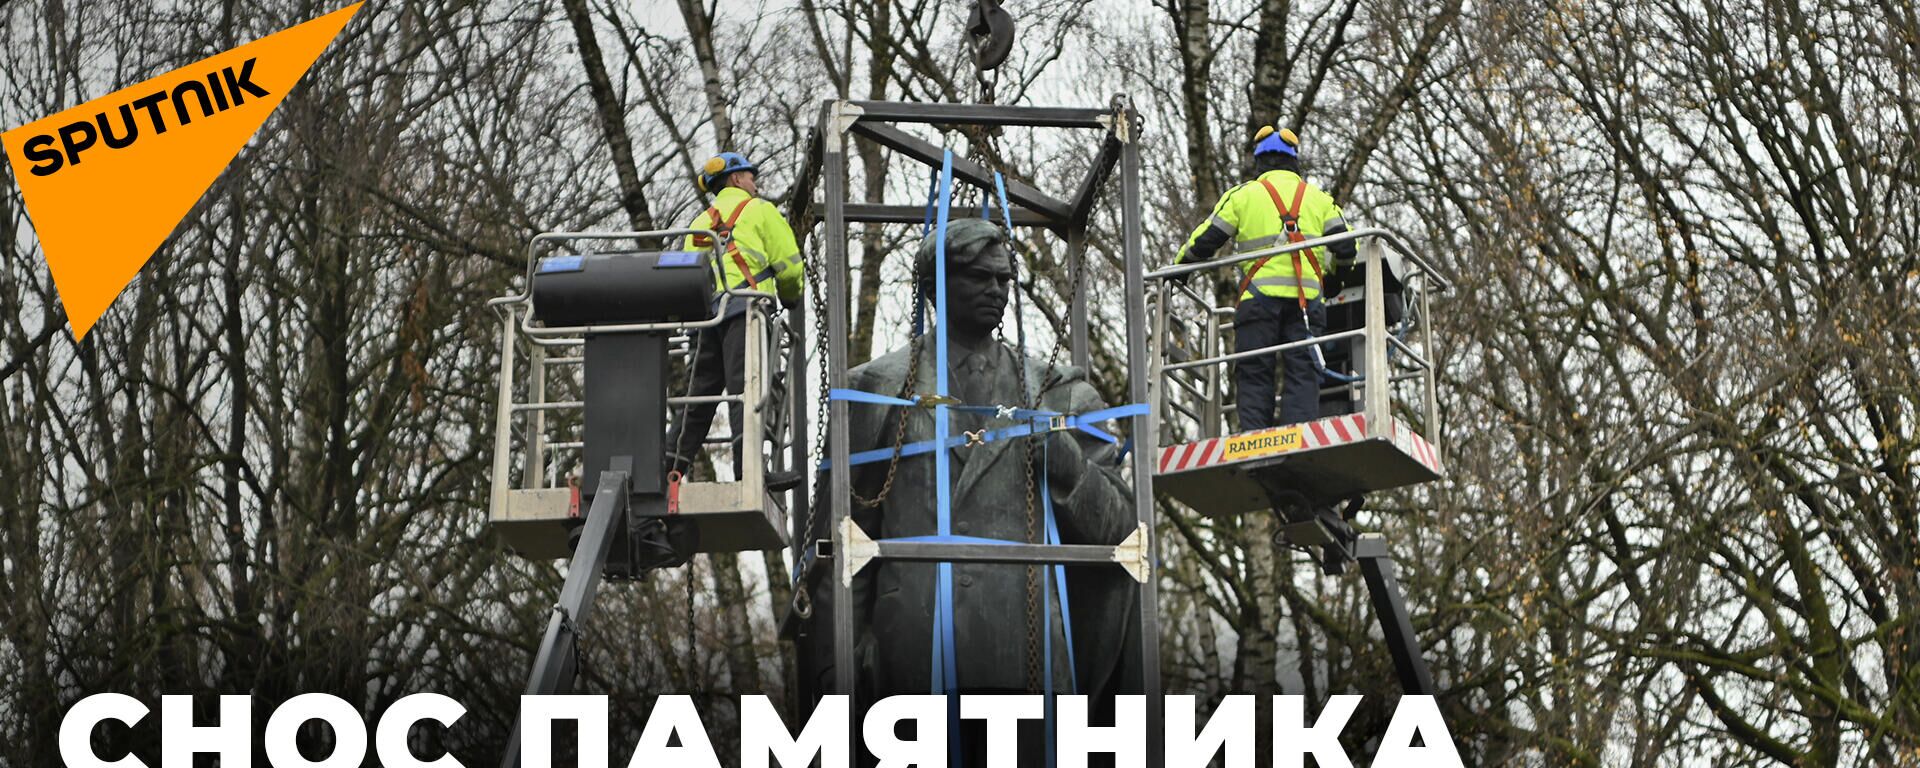 В Литве снесли памятник советскому писателю - Sputnik Литва, 1920, 19.11.2021